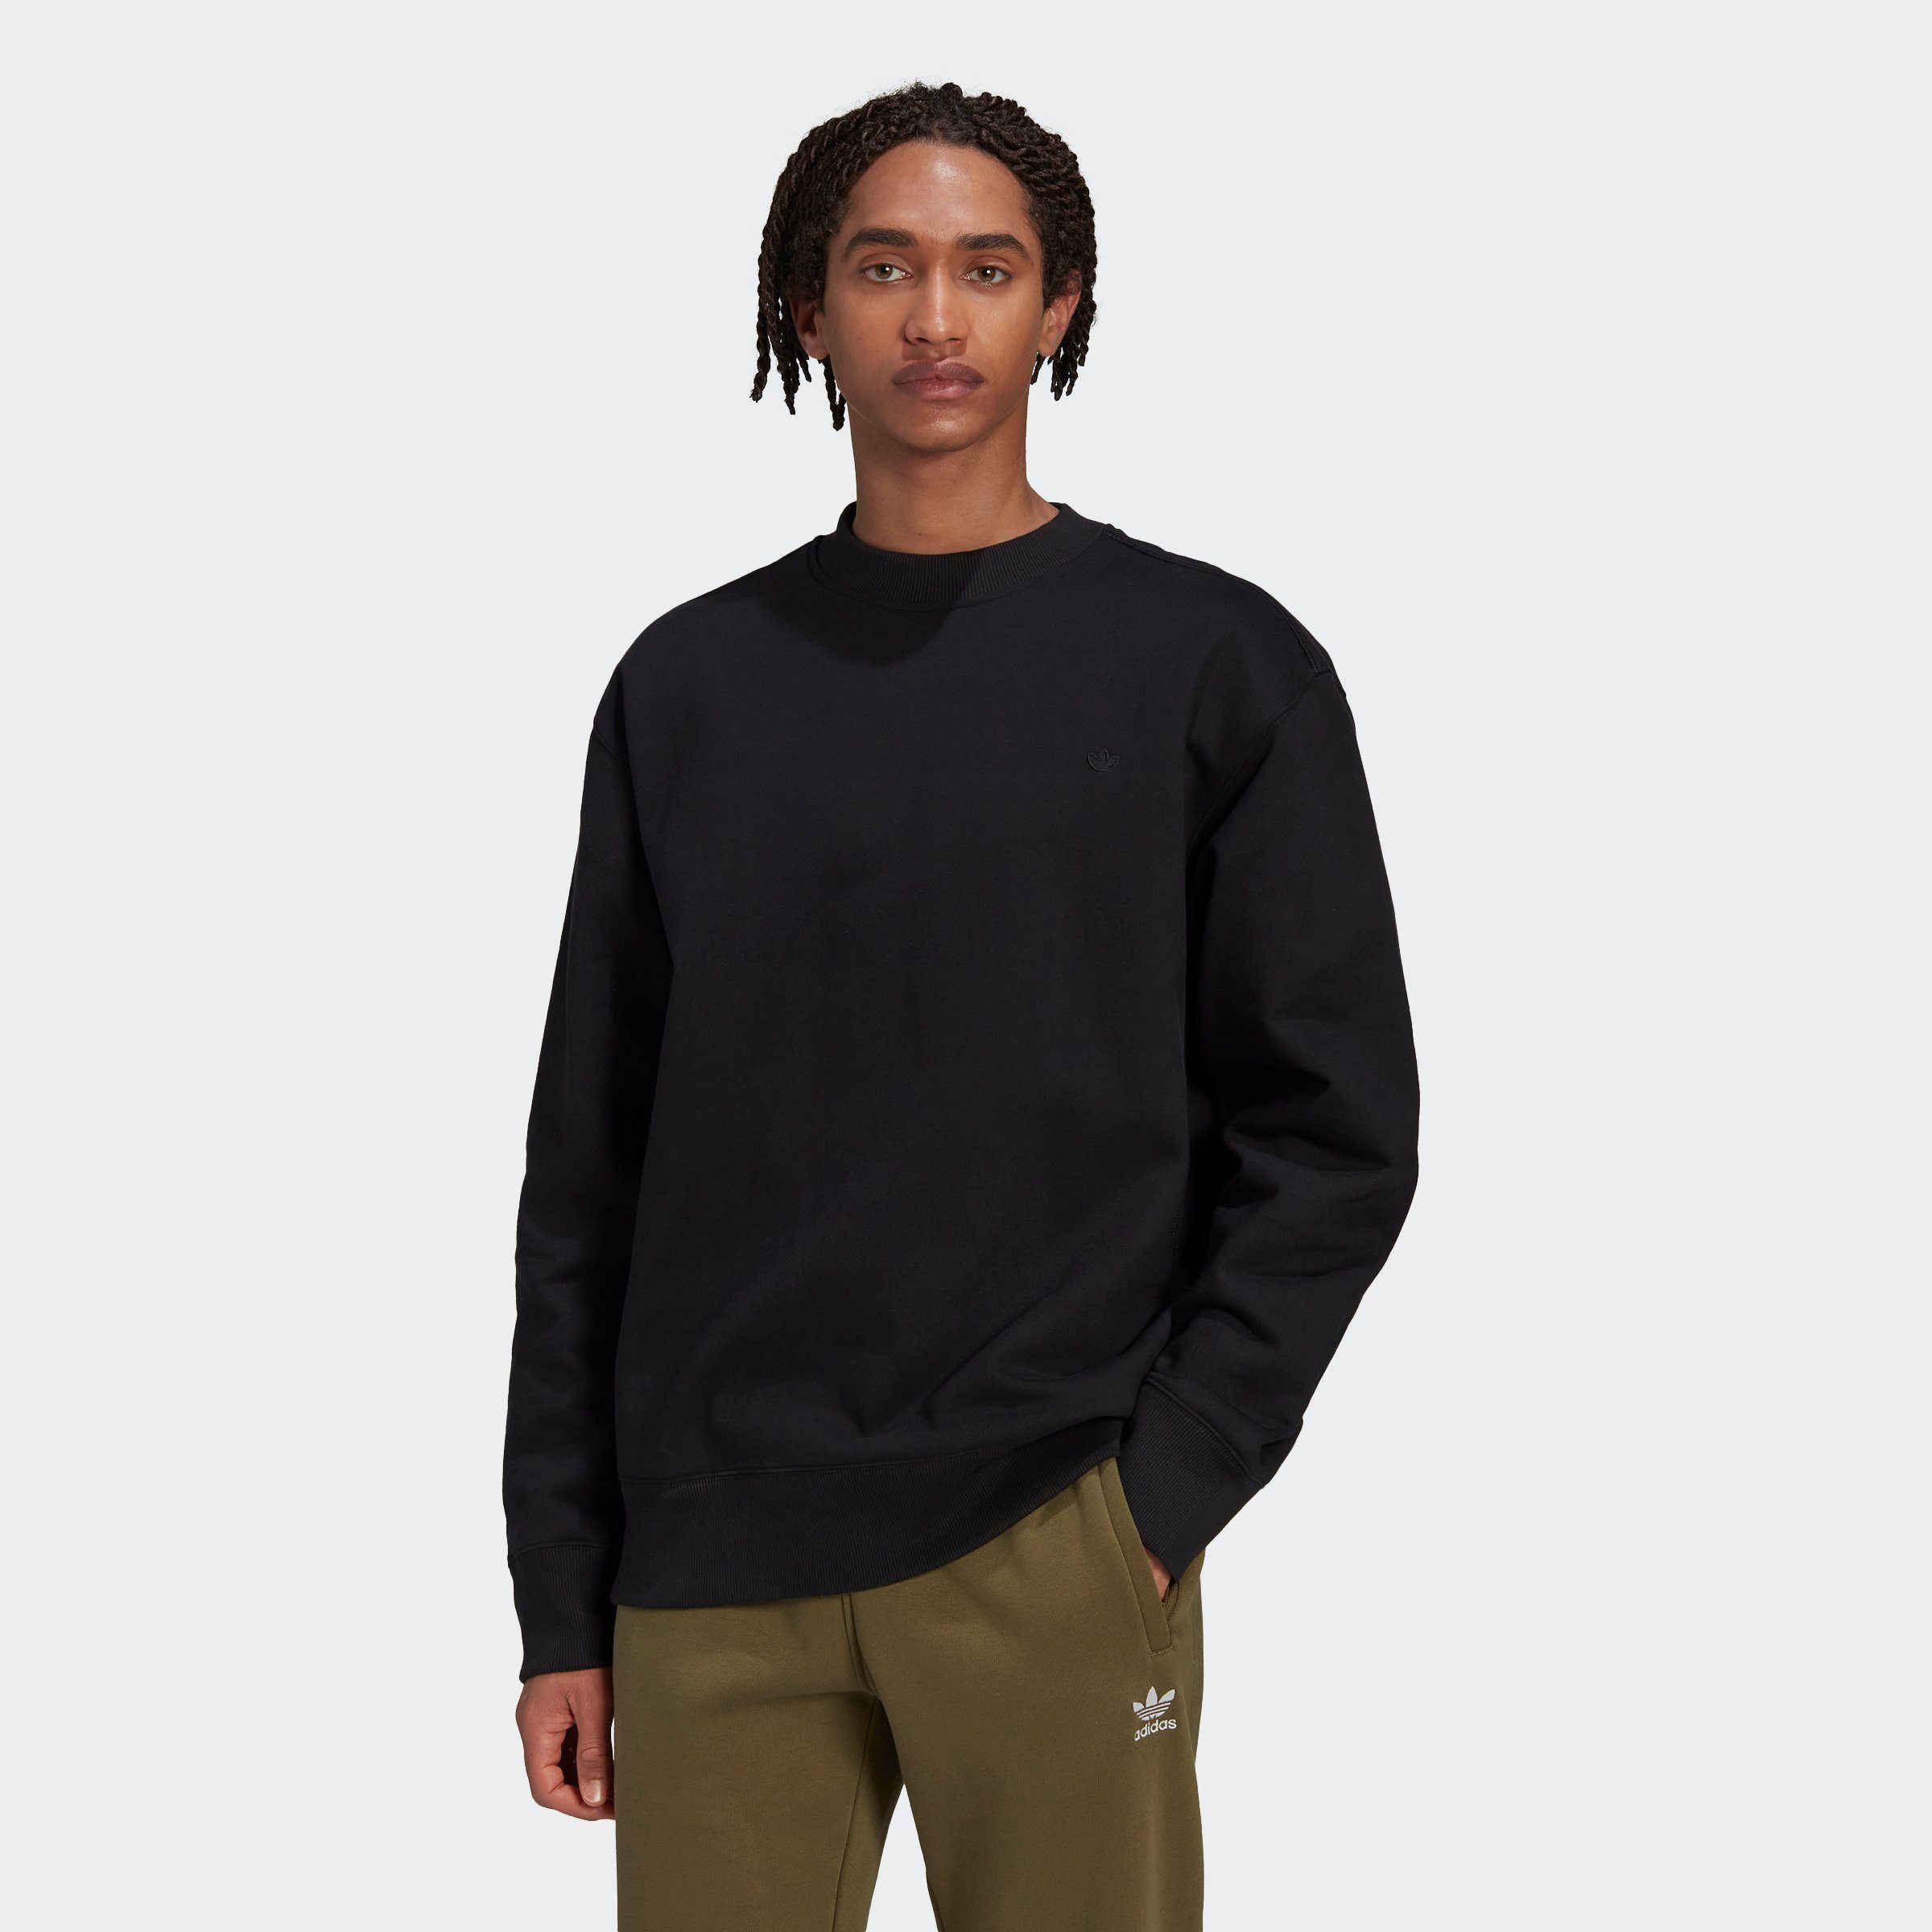 C black Sweatshirt Originals adidas Crew